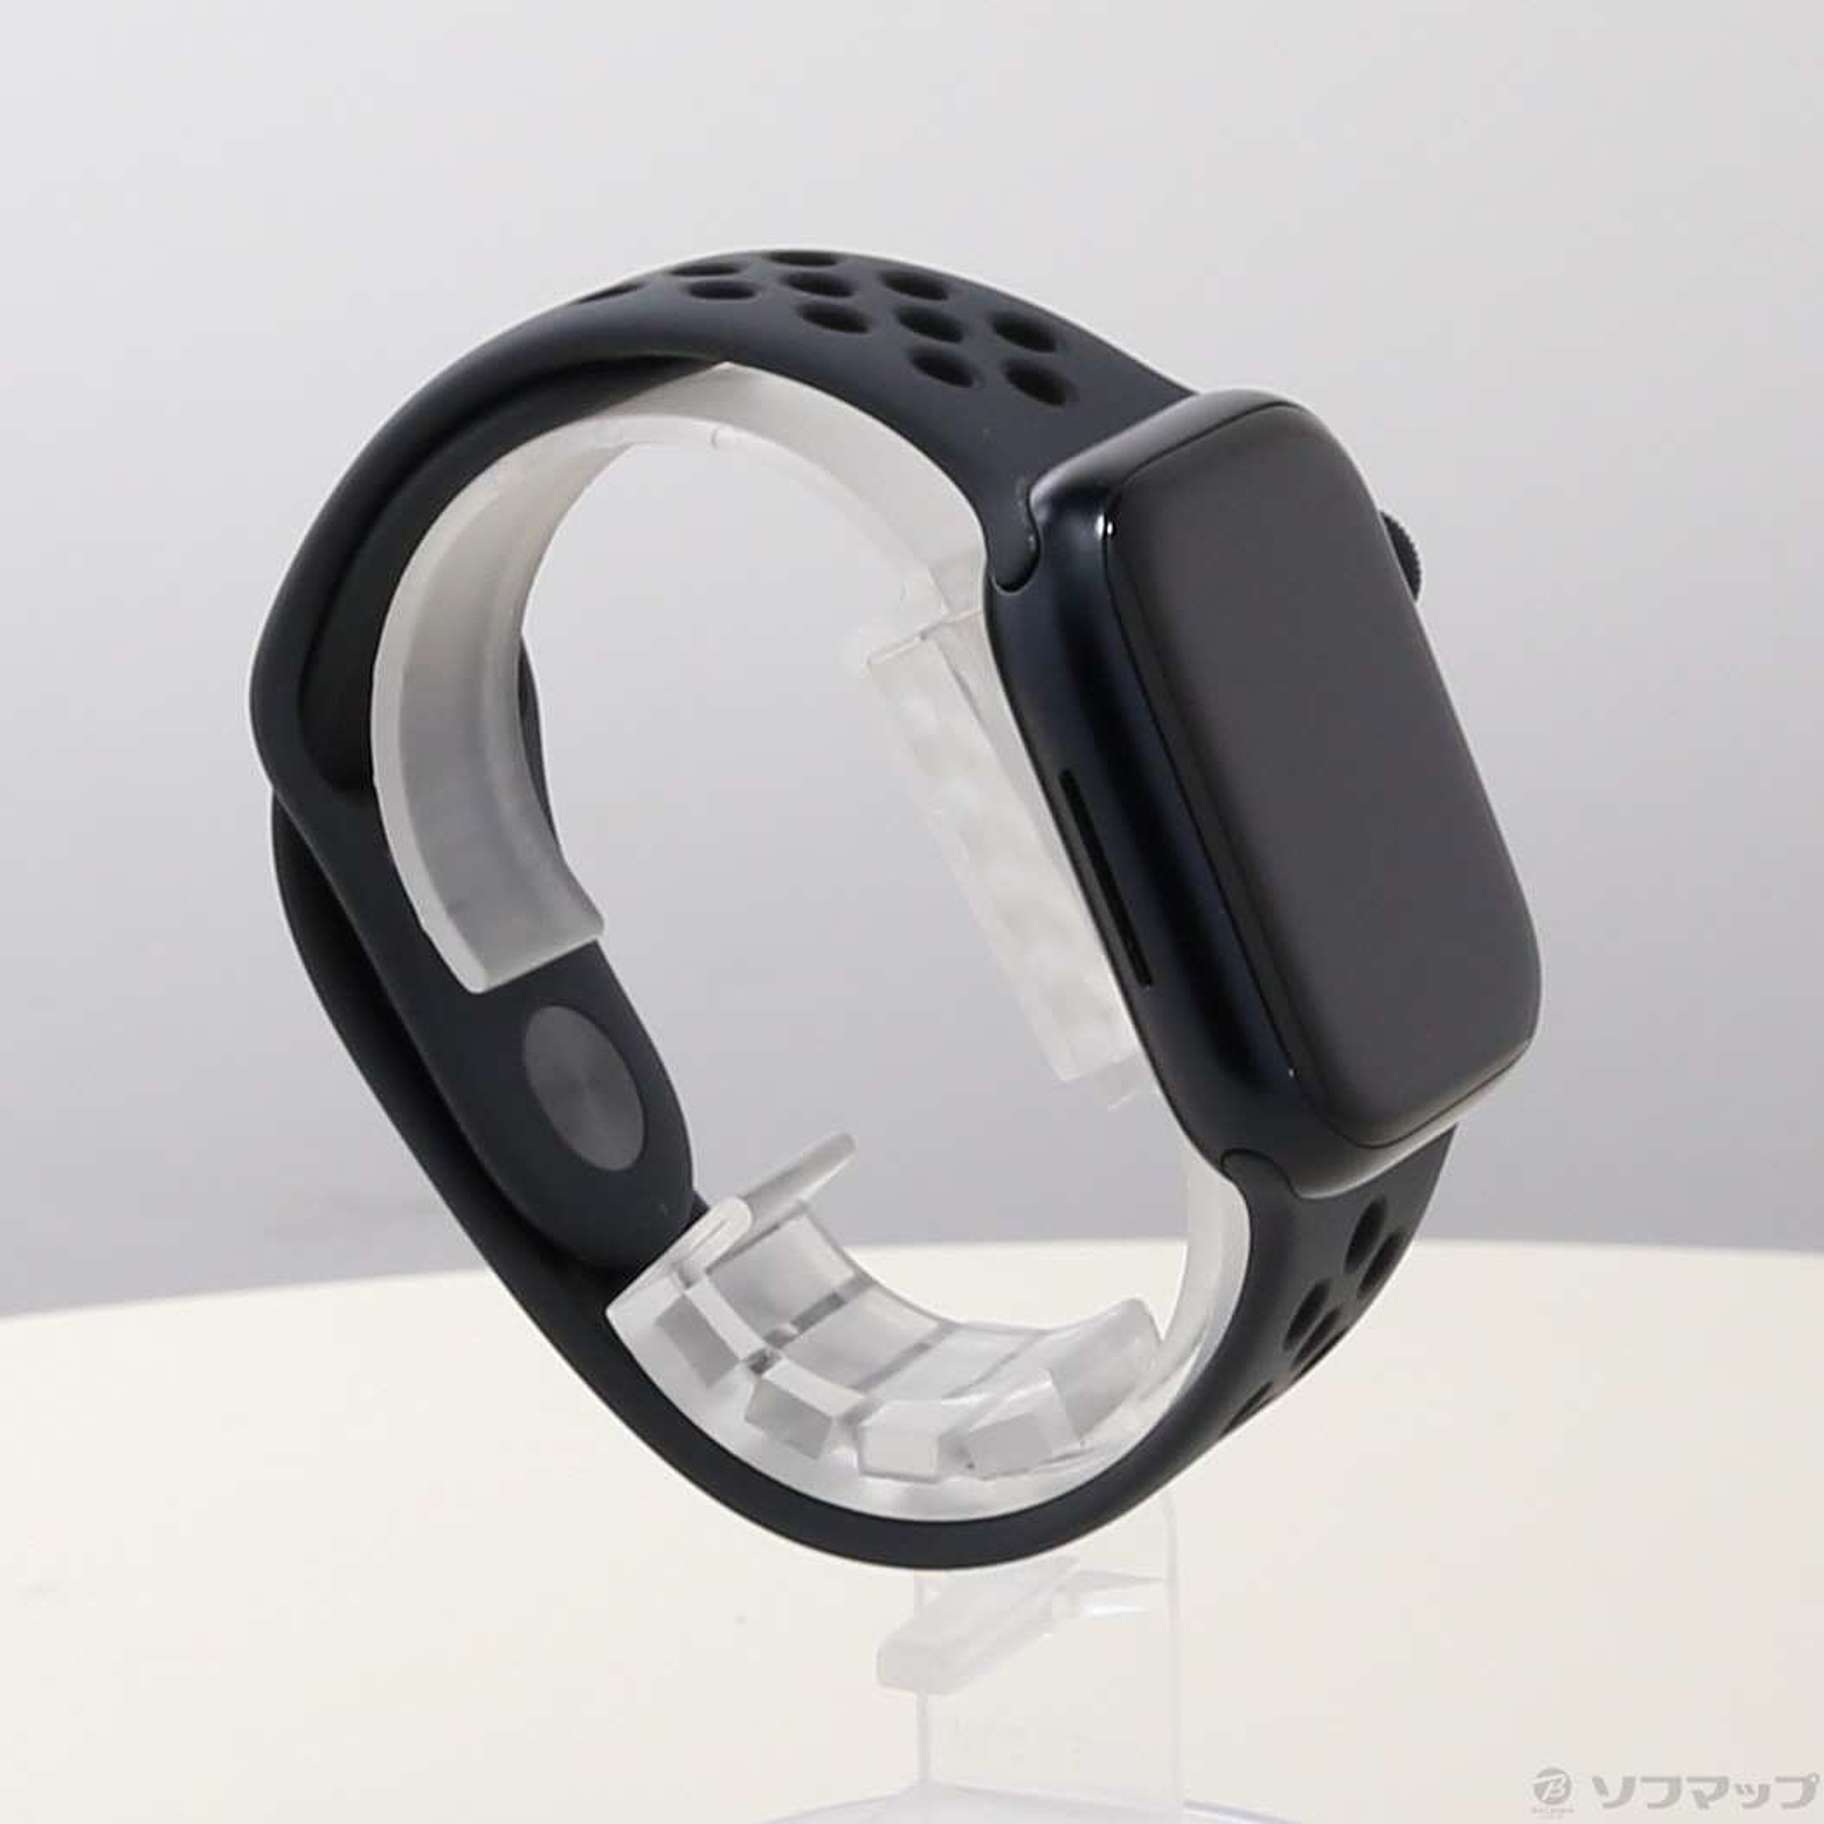 中古品〕 Apple Watch Series 7 Nike GPS 41mm ミッドナイト 